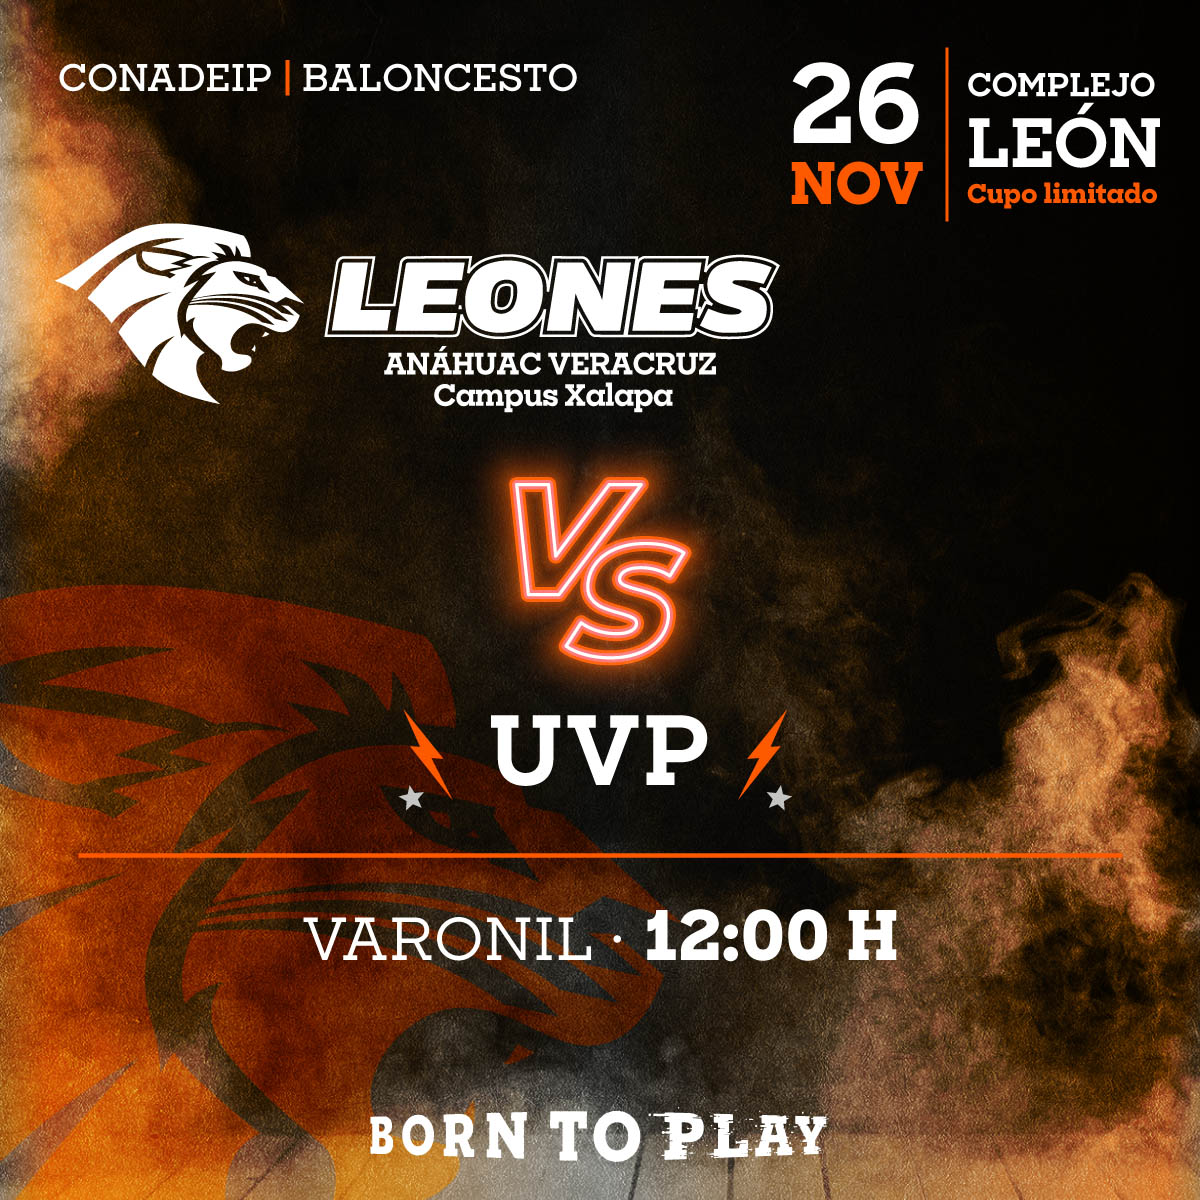 Baloncesto Varonil: Leones vs UVP